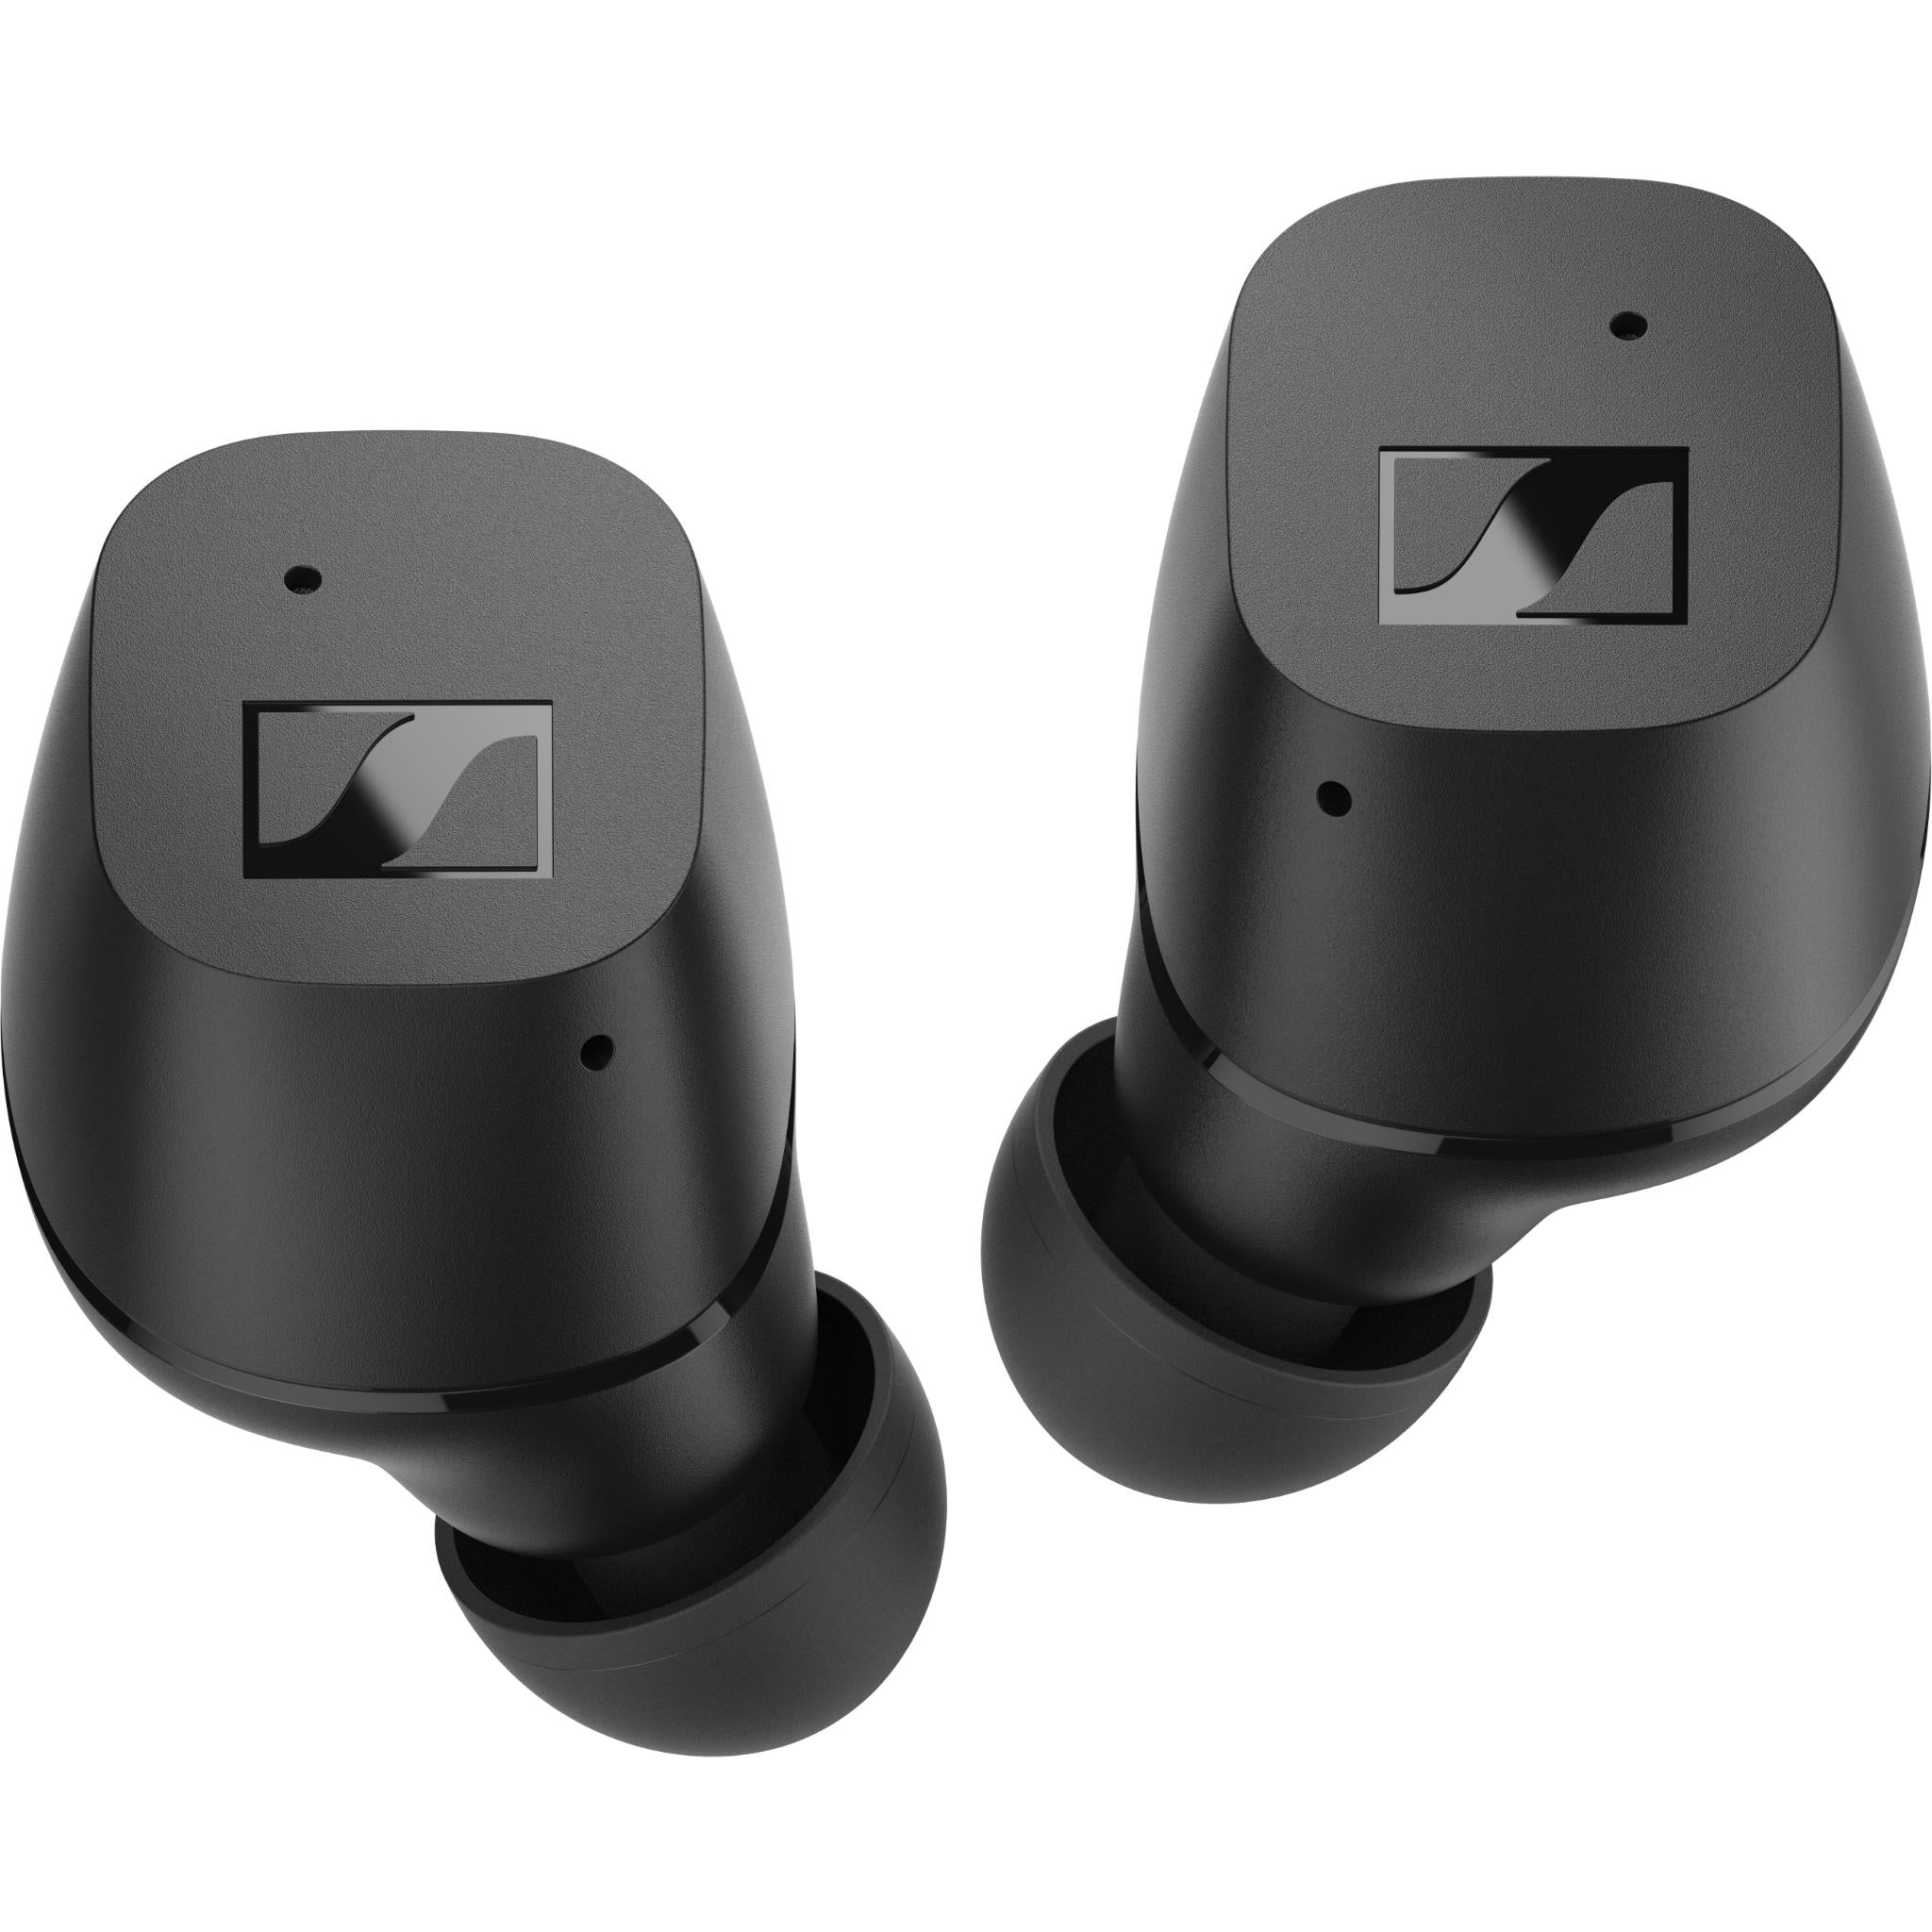 sennheiser cx true wireless in-ear headphones (black)